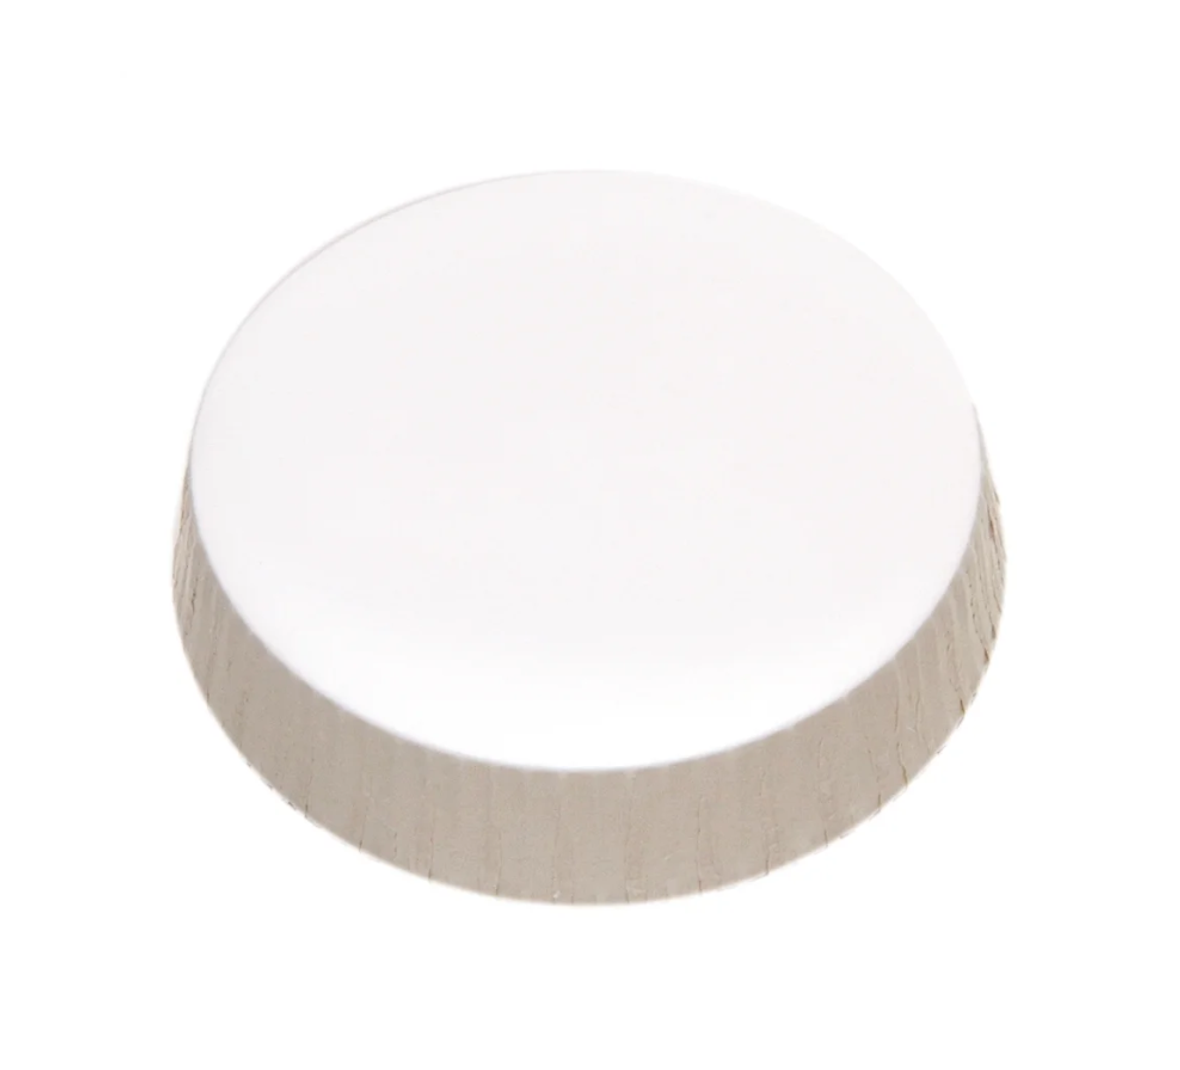 Sonoco Unprinted Stancaps Glass Cover, Paper, 75MM, 1000 Per Case